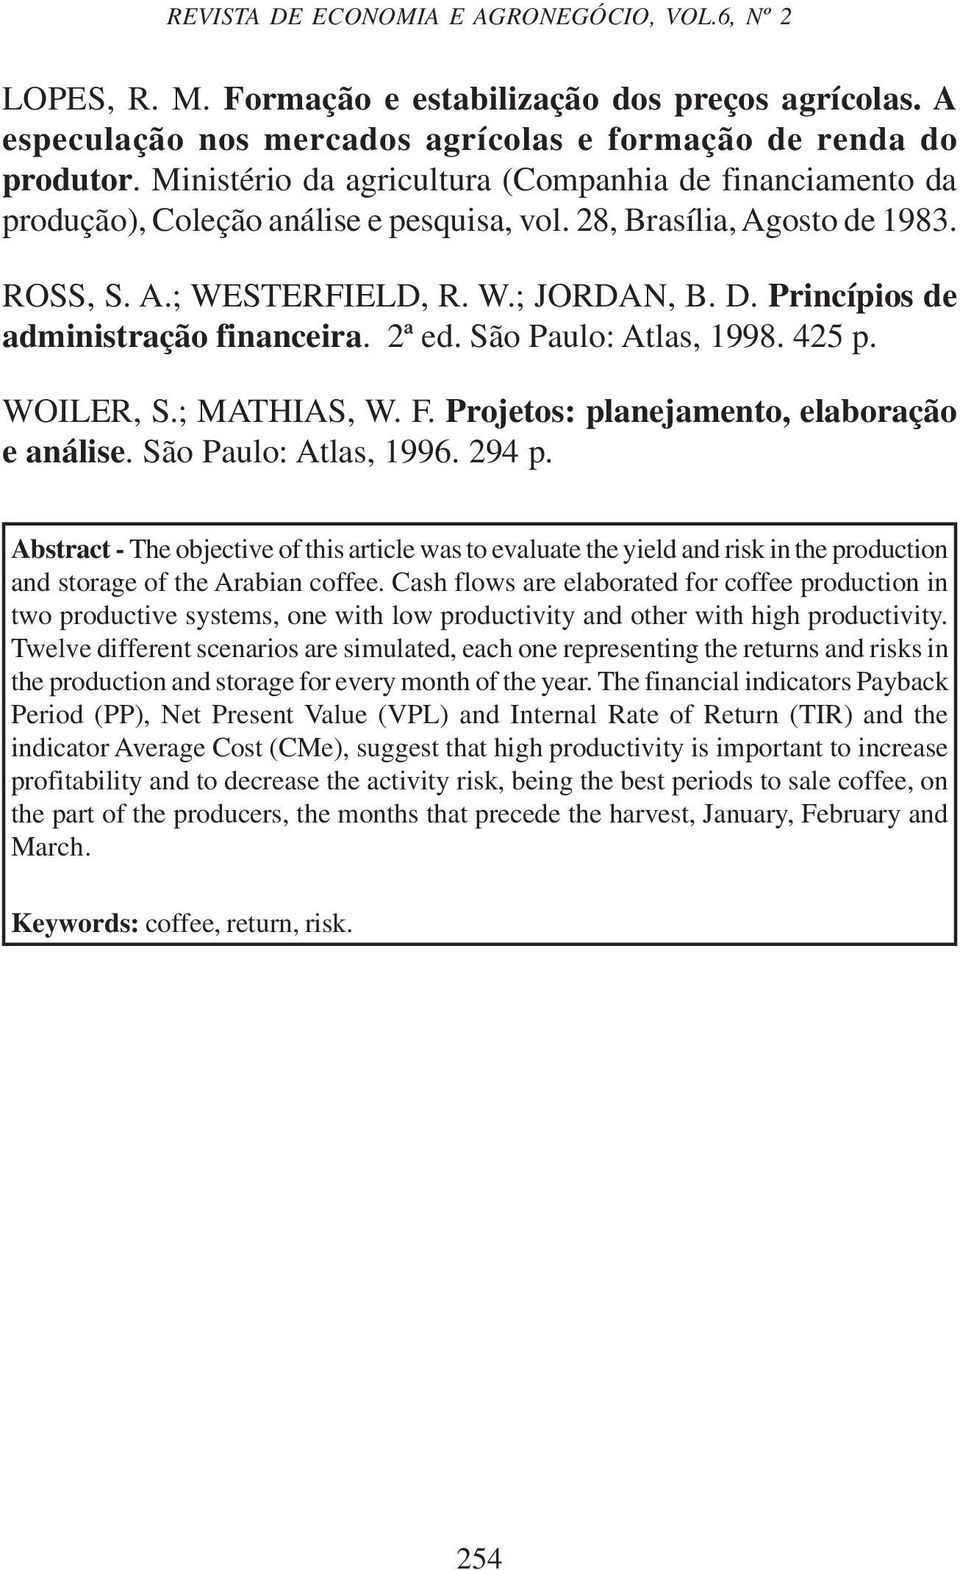 Princípios de administração financeira. 2ª ed. São Paulo: Atlas, 1998. 425 p. WOILER, S.; MATHIAS, W. F. Projetos: planejamento, elaboração e análise. São Paulo: Atlas, 1996. 294 p.